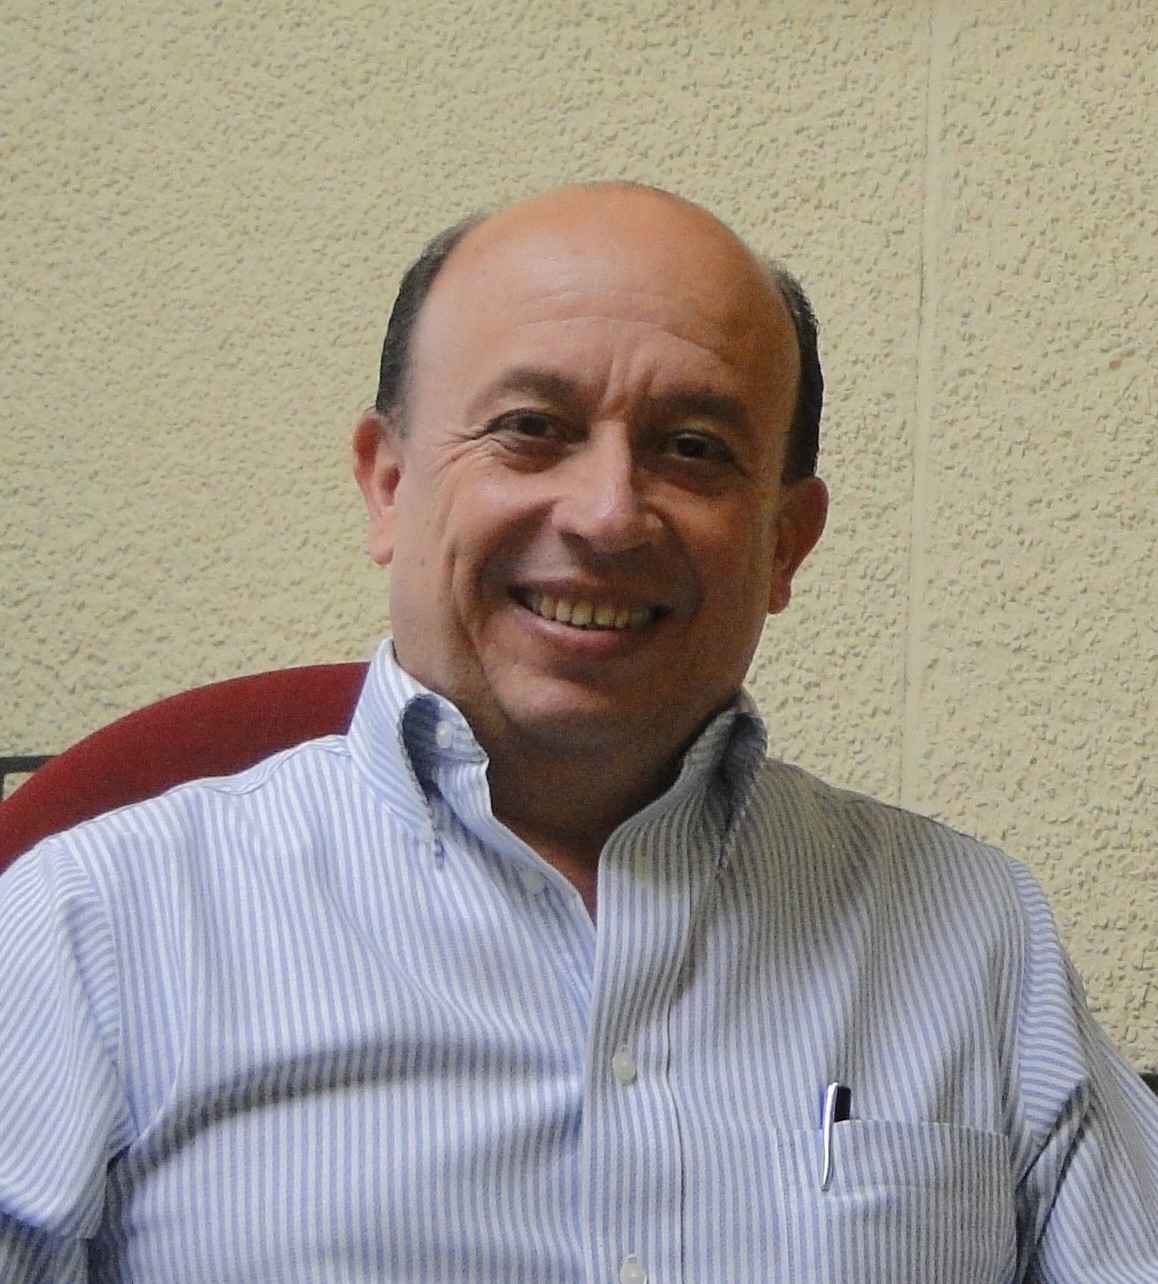 José María Aguirre